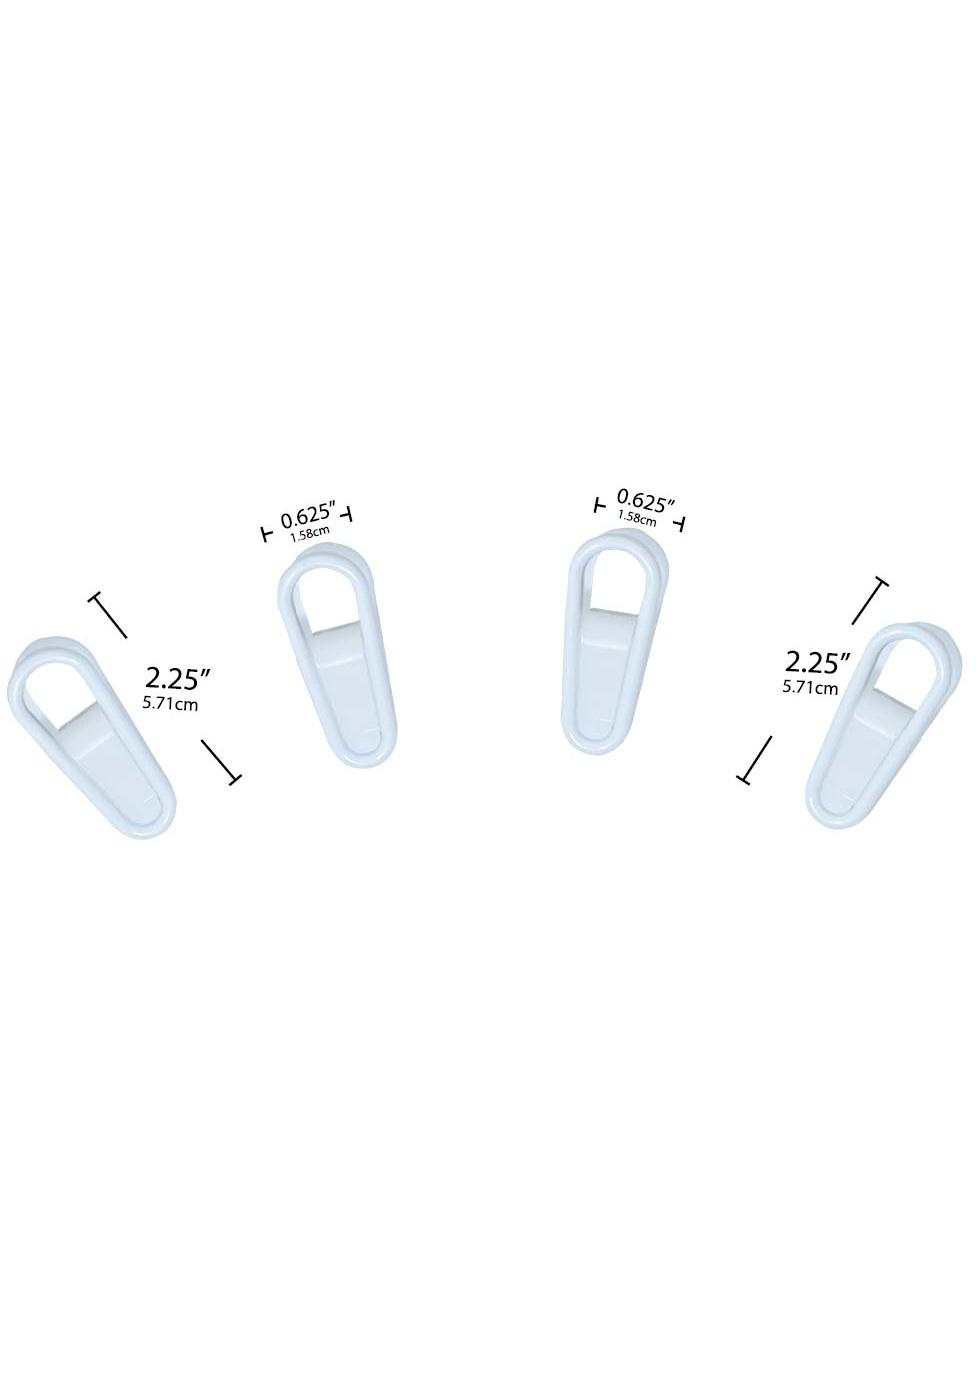 Merrick Multi Purpose Plastic Hanger Clips – White; image 2 of 3